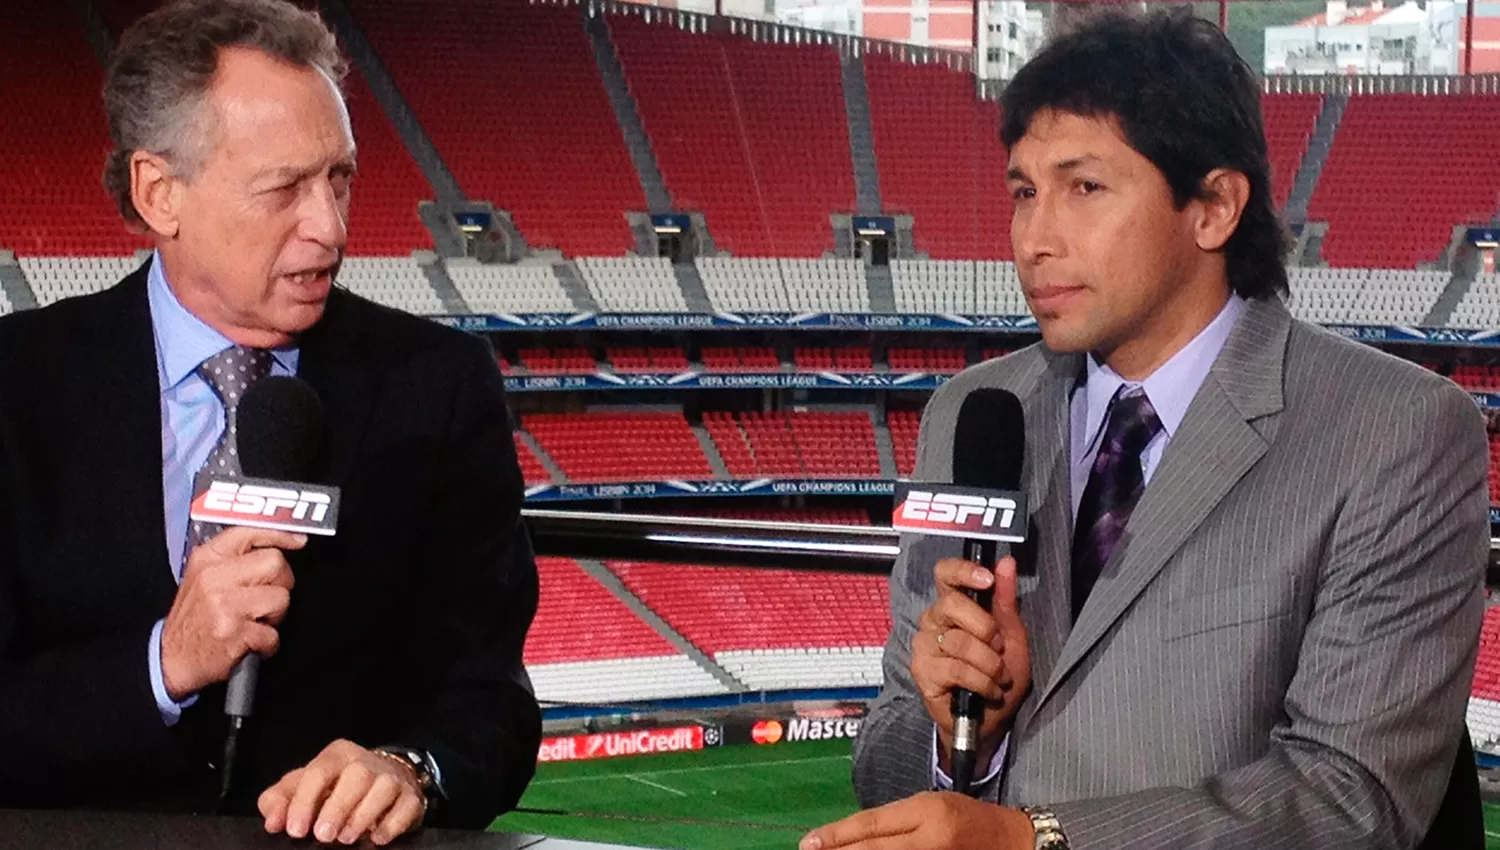 Jorge Bermúdez (derecha) en una de sus apariciones en ESPN; junto a Enrique Wolff.
FOTO TOMADA DE espnmediazone.com